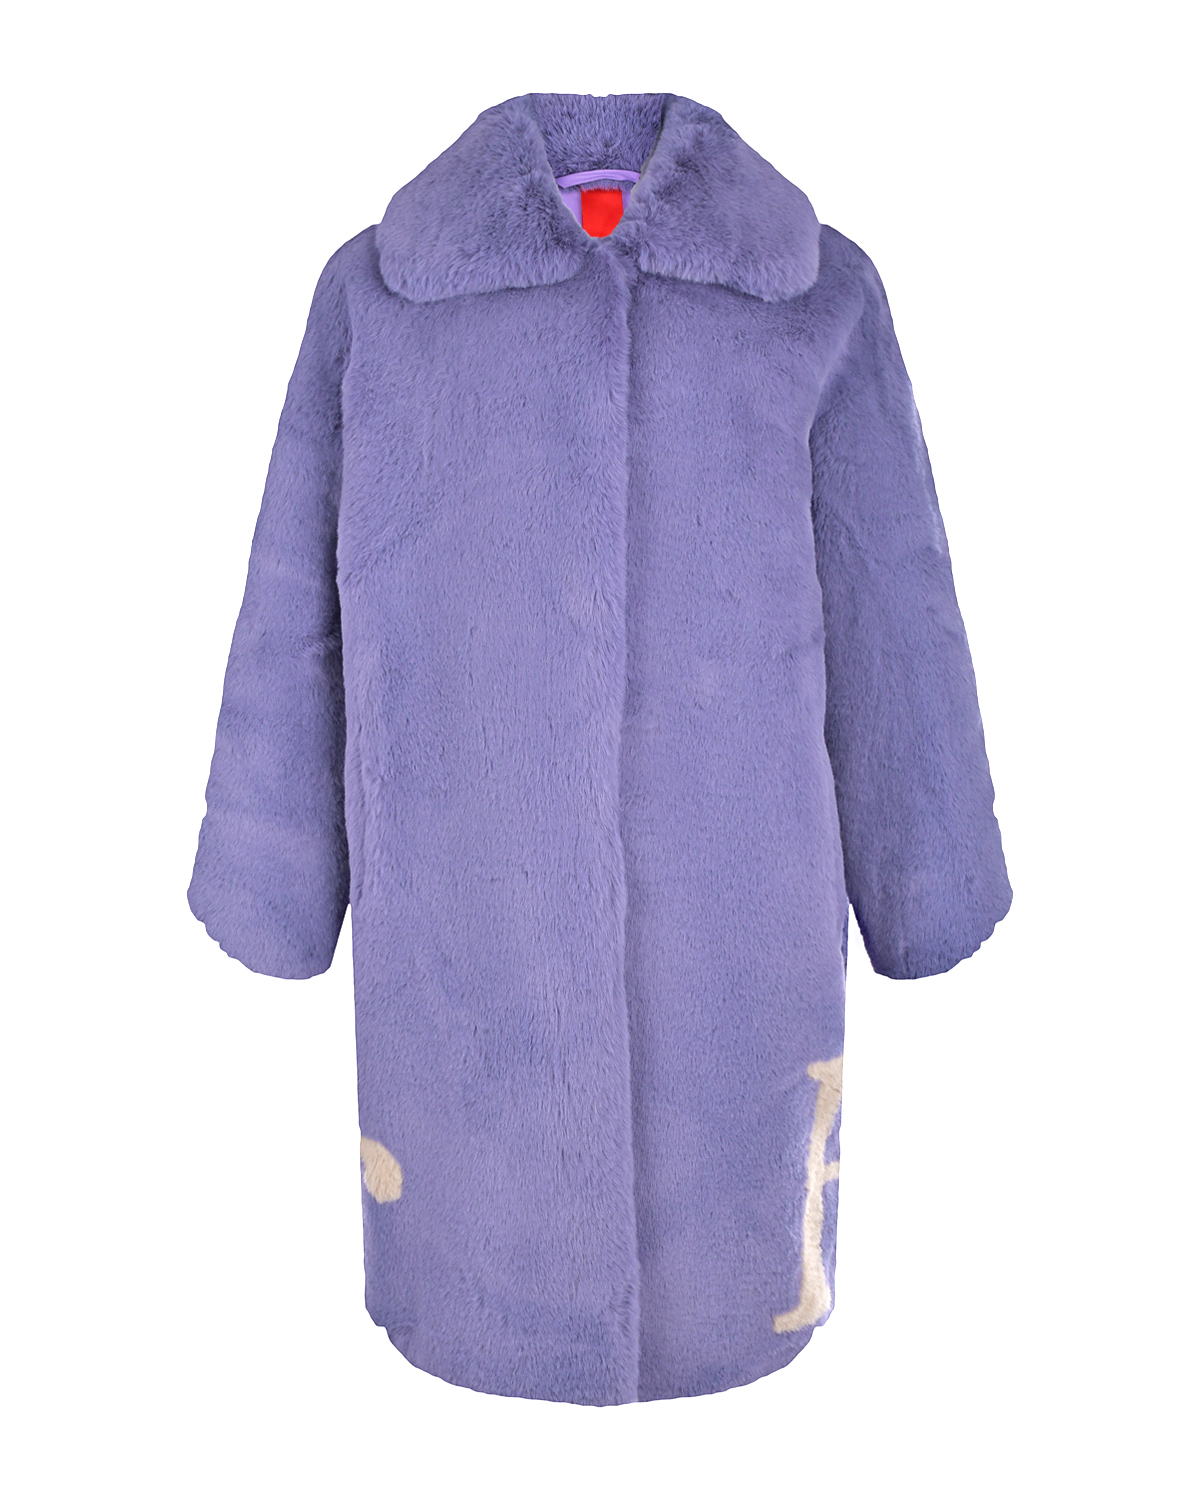 Сиреневое пальто из эко-меха Glox, размер 40, цвет сиреневый